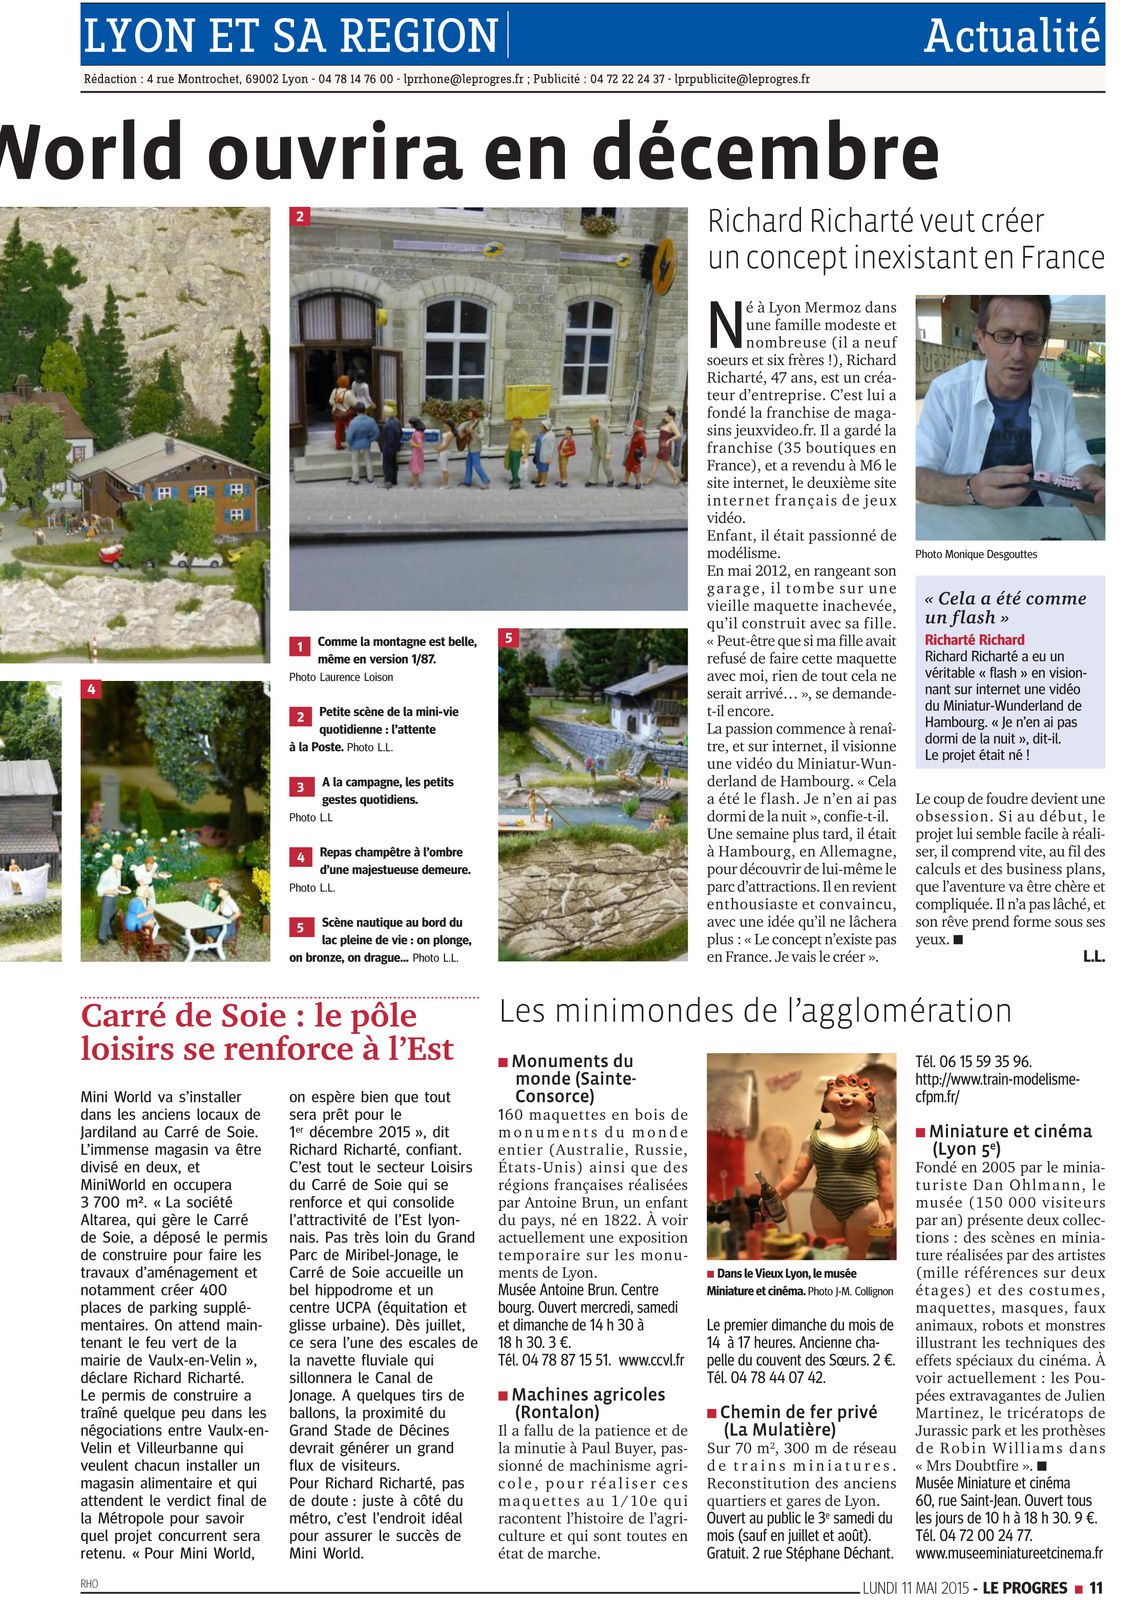 Article dans le journal &quot;Le Progrès de Lyon&quot; du Lundi 11 Mai 2015